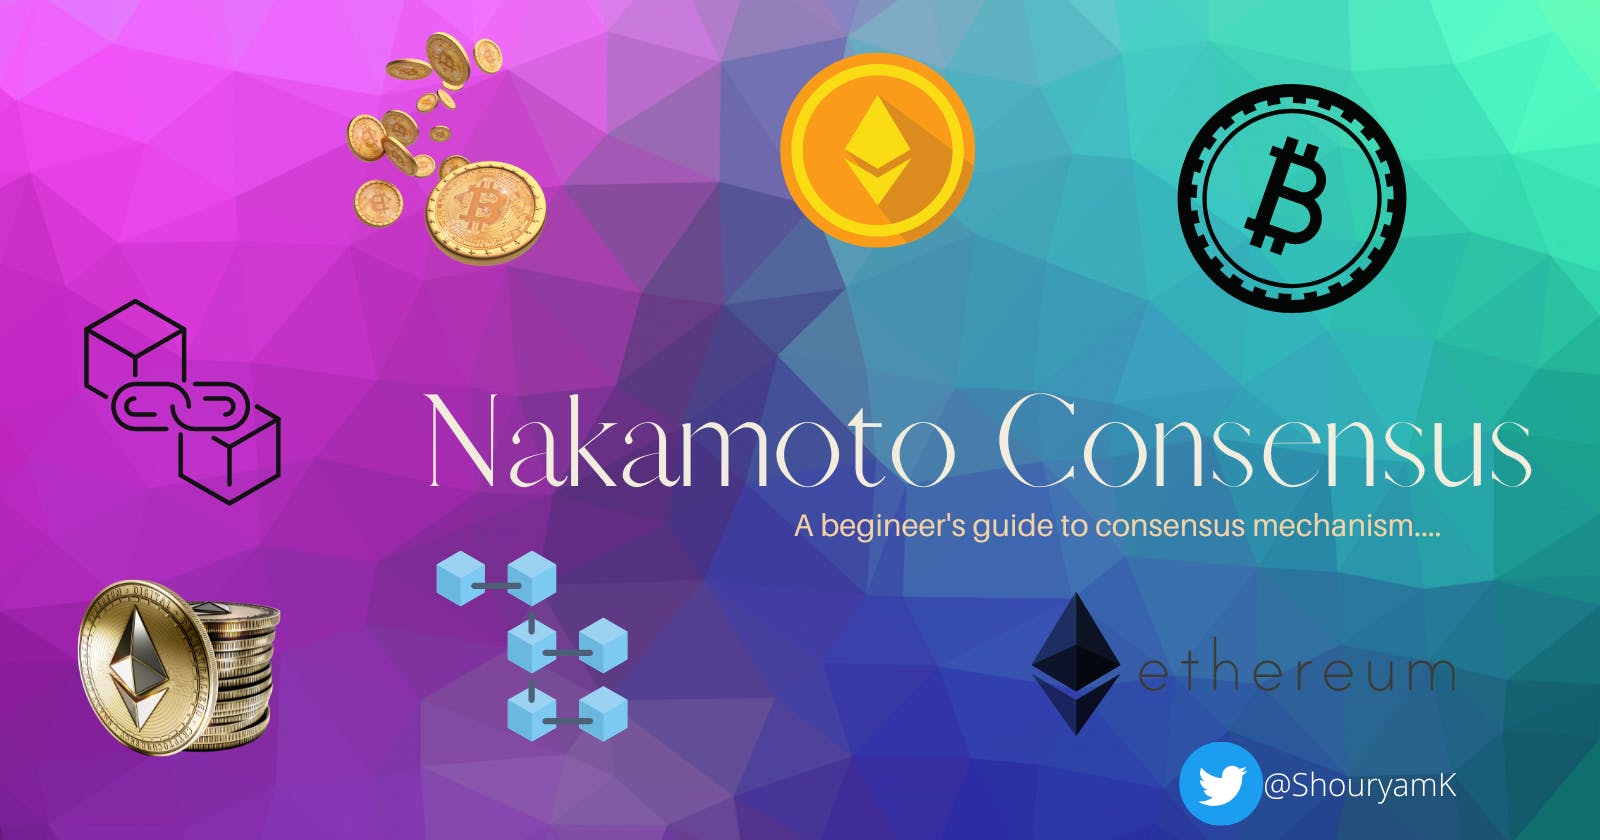 The Nakamoto Consensus